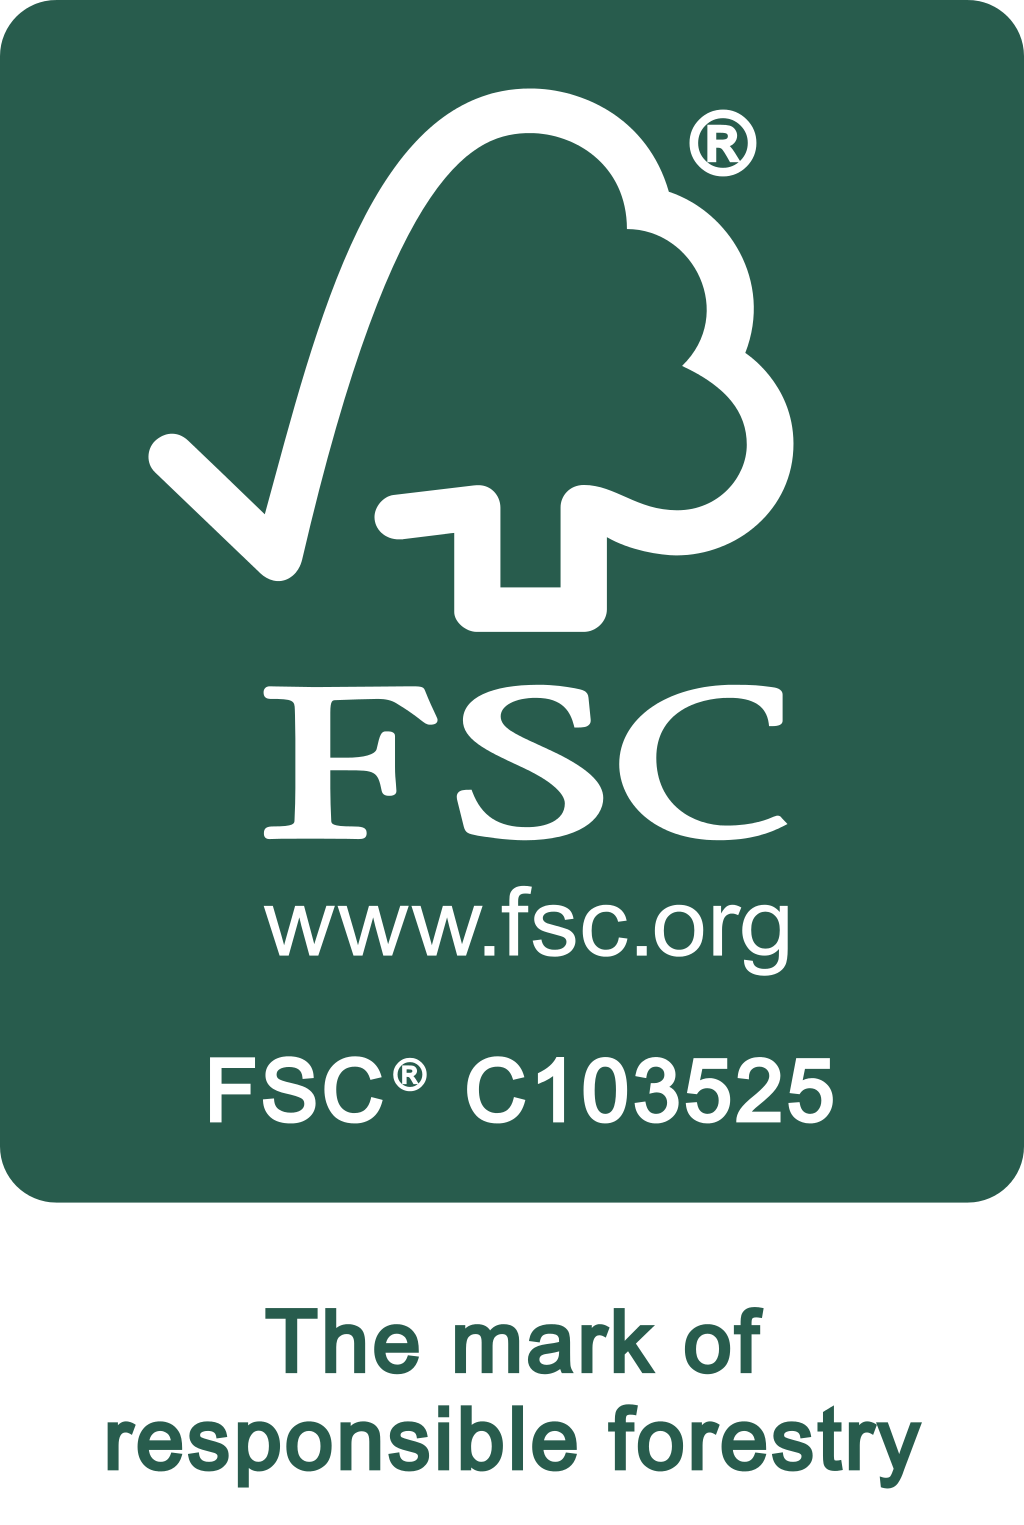 FSC_C103525_WhiteOnGreen_Logo.png